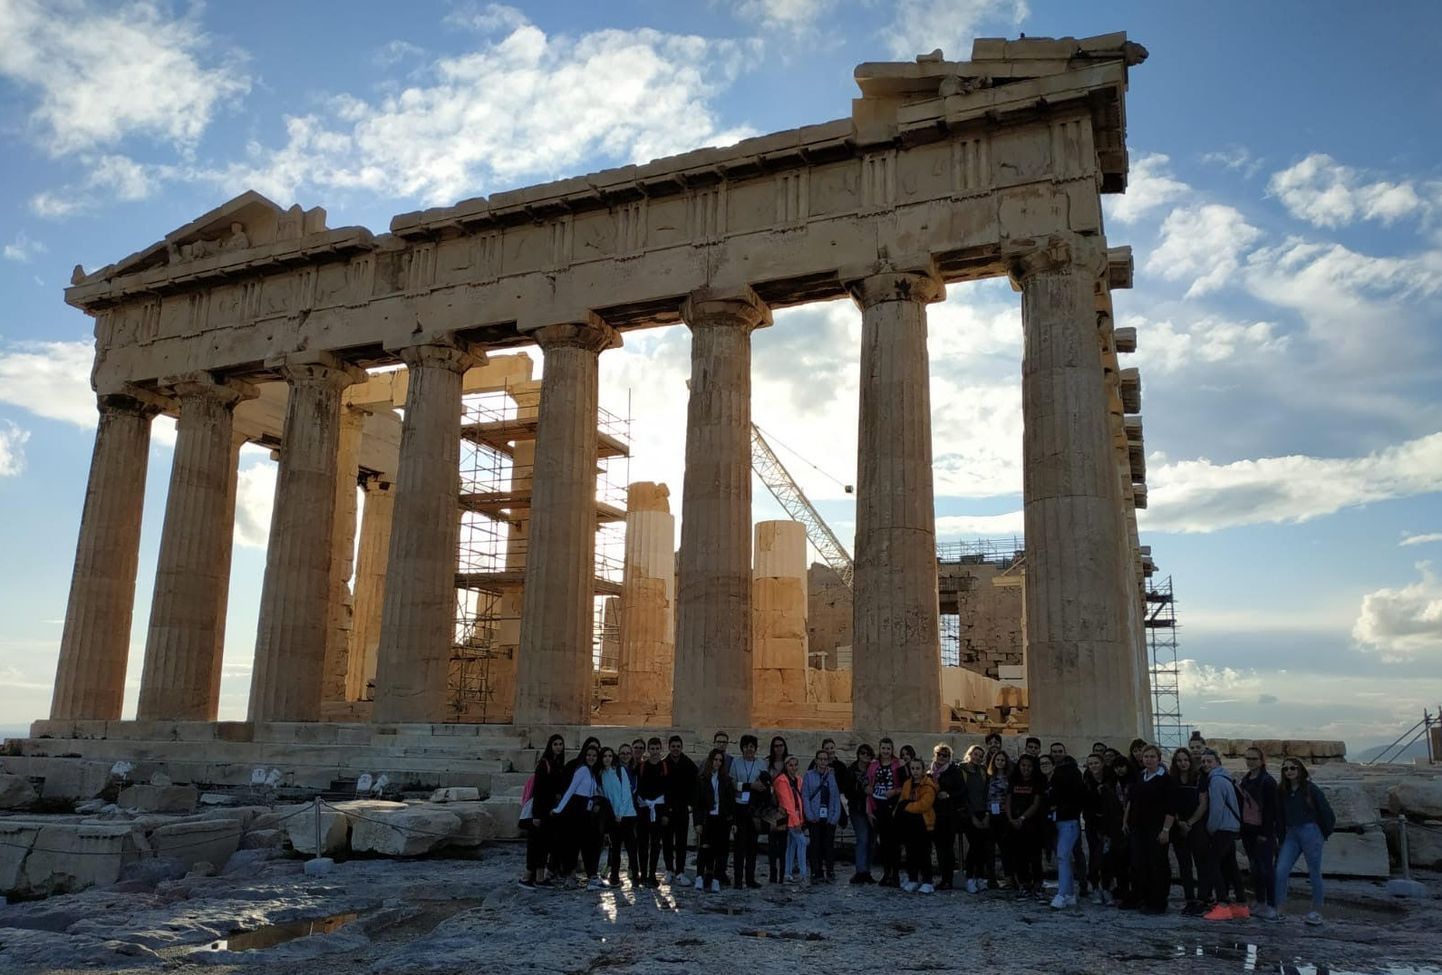 Projektis osalenud nelja riigi noored Ateena akropolis